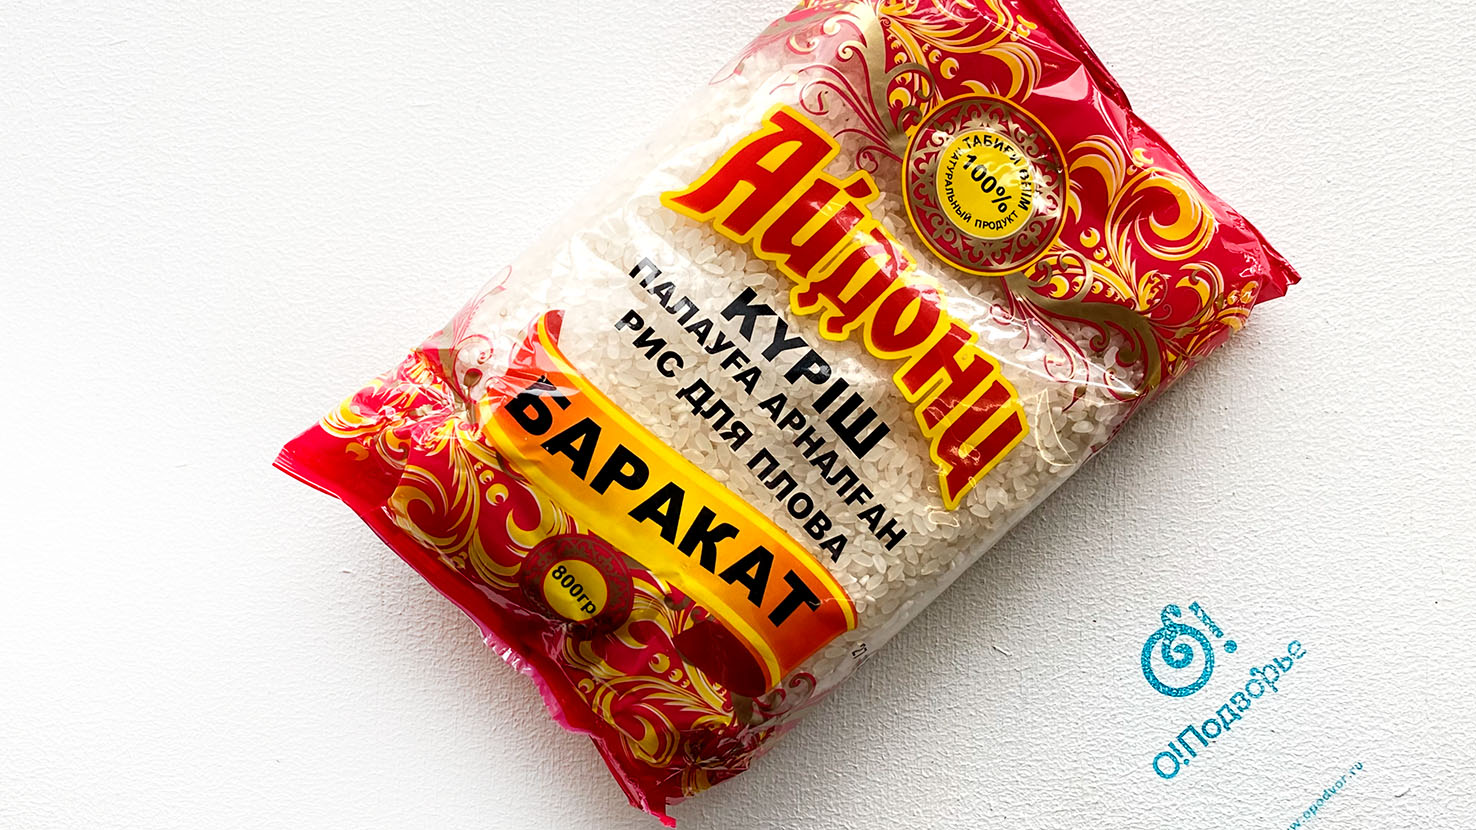 Рис для плова, "Айдони", Казахстан, 800 грамм